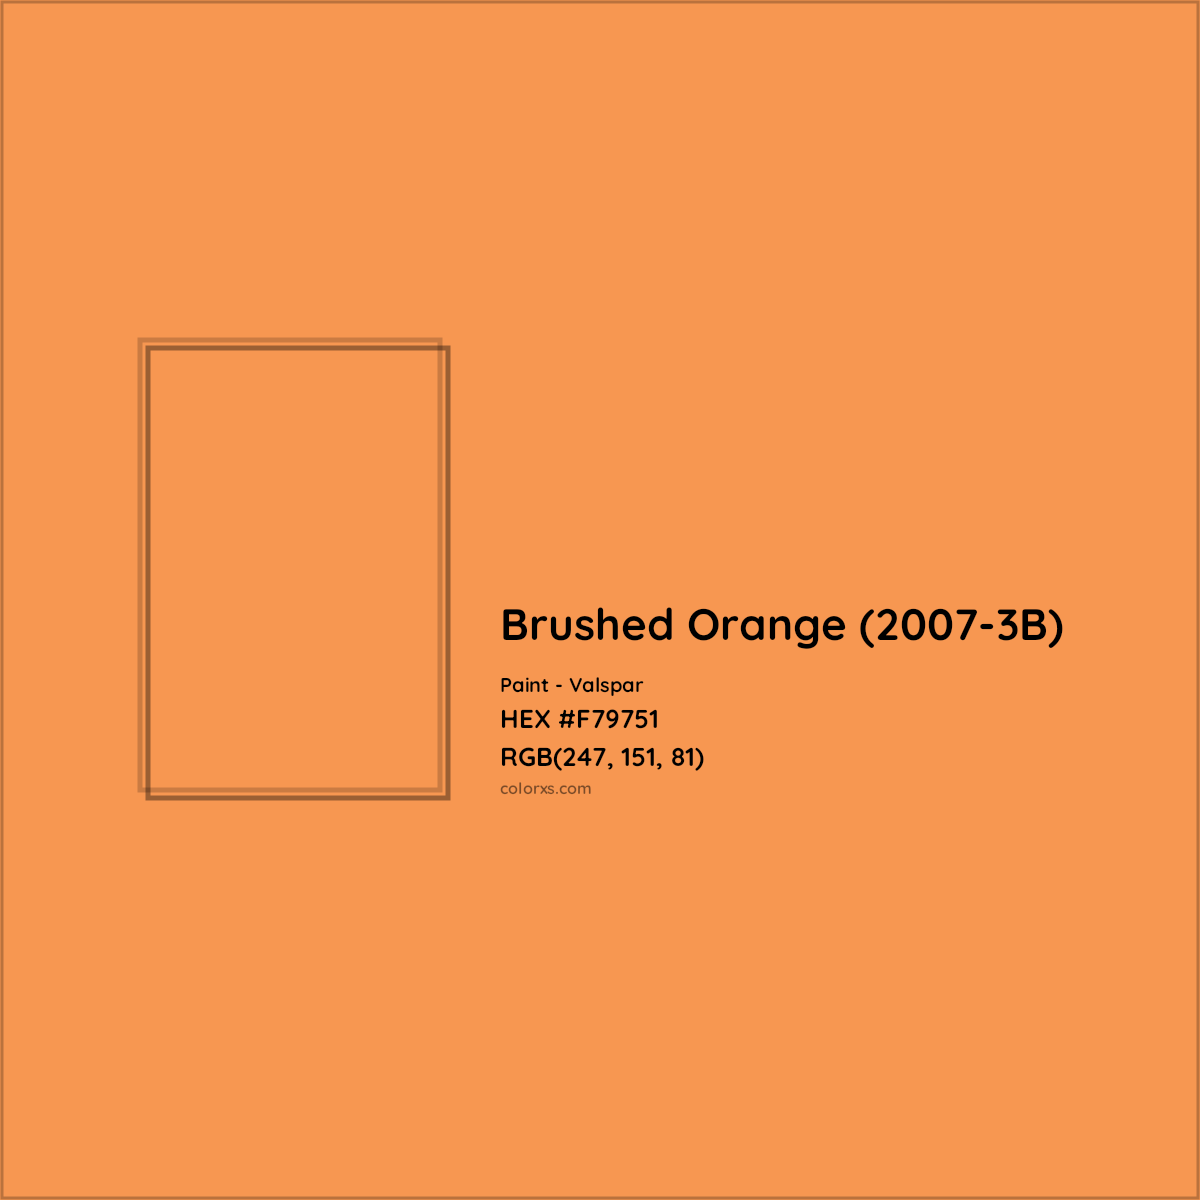 HEX #F79751 Brushed Orange (2007-3B) Paint Valspar - Color Code